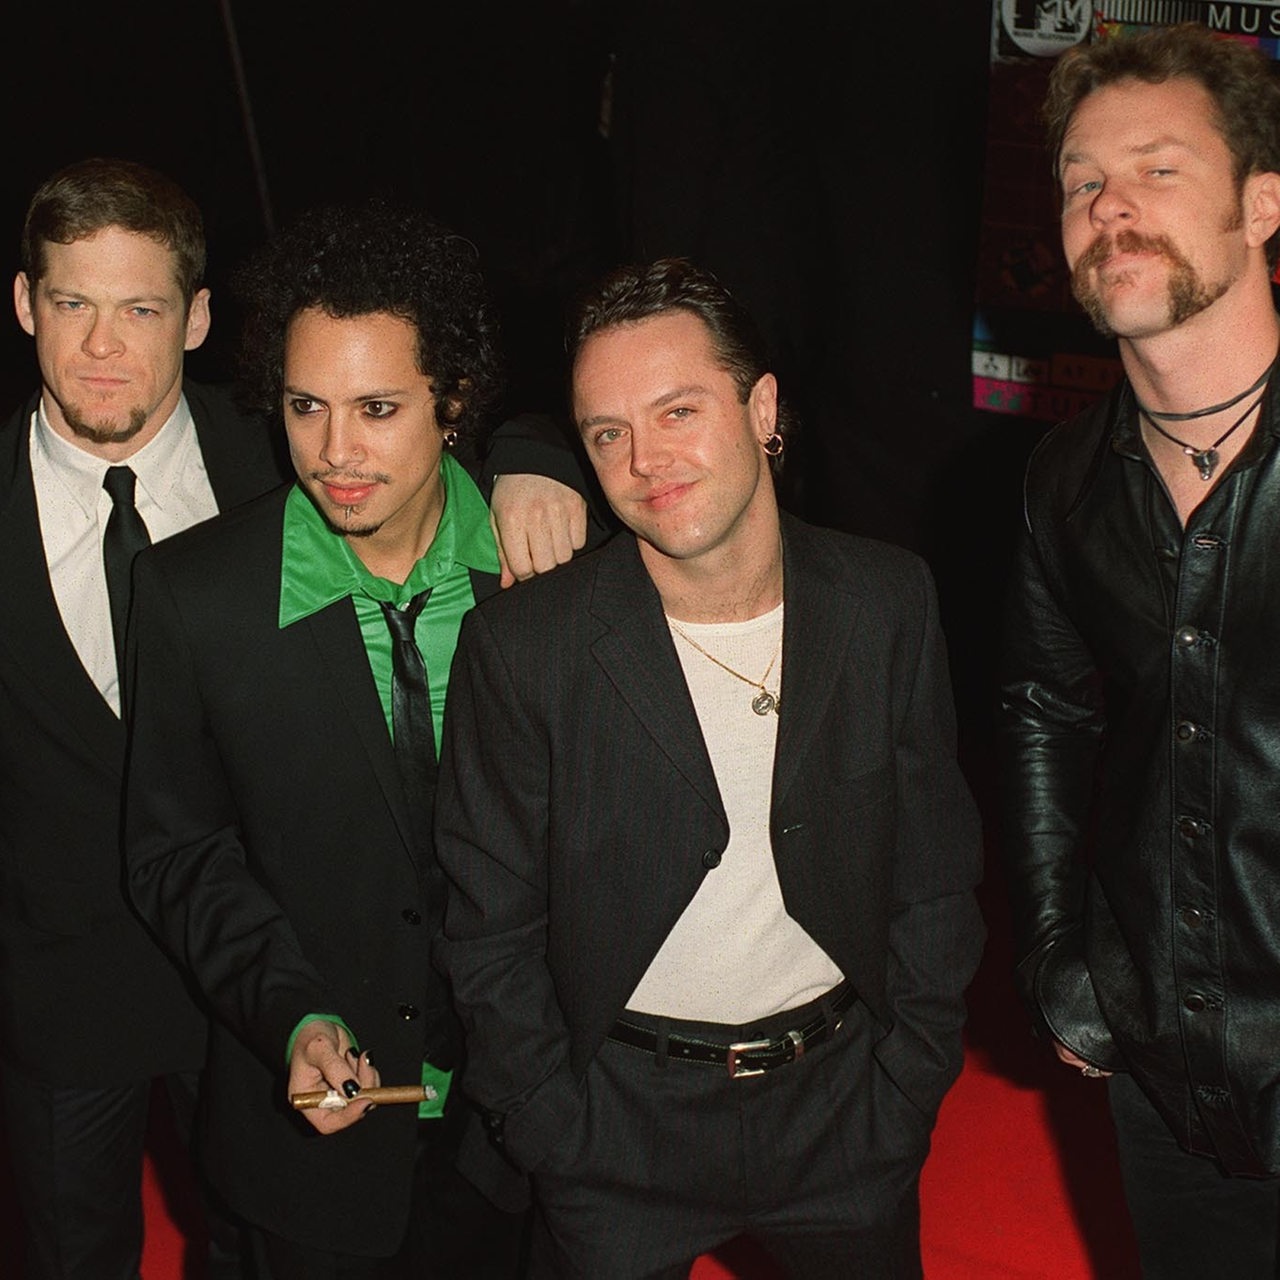 Die Band Metallica im Jahr 1996 (Archivbild)